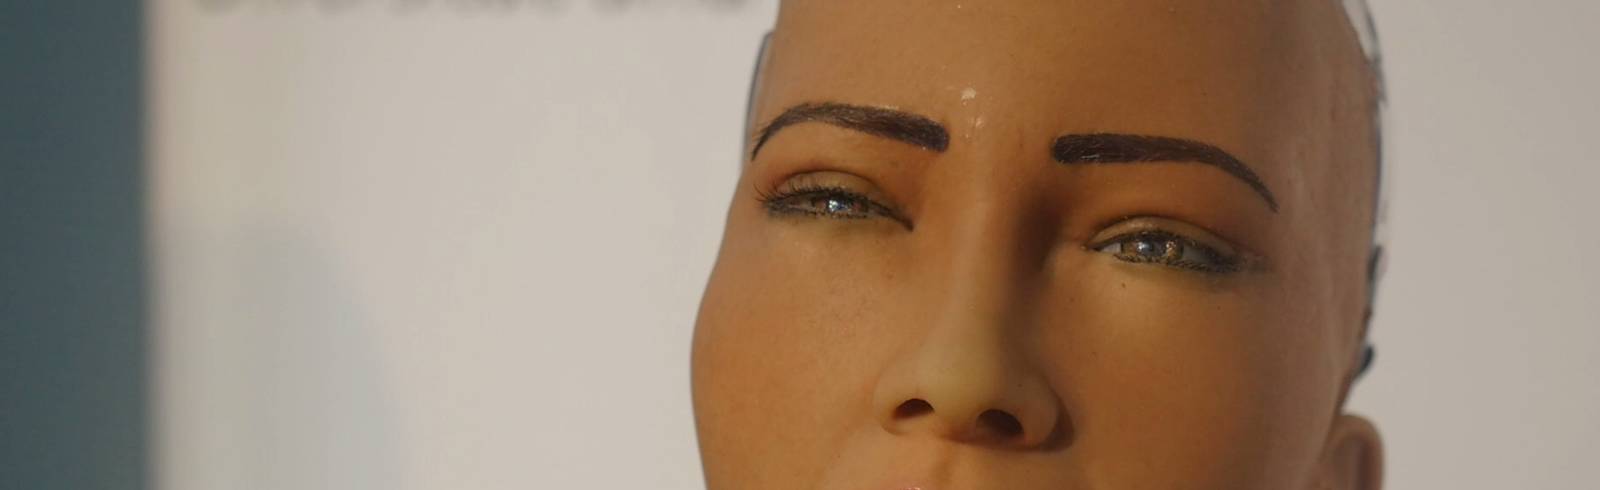 Beängstigend: Roboter "Sophia" wie ein Mensch